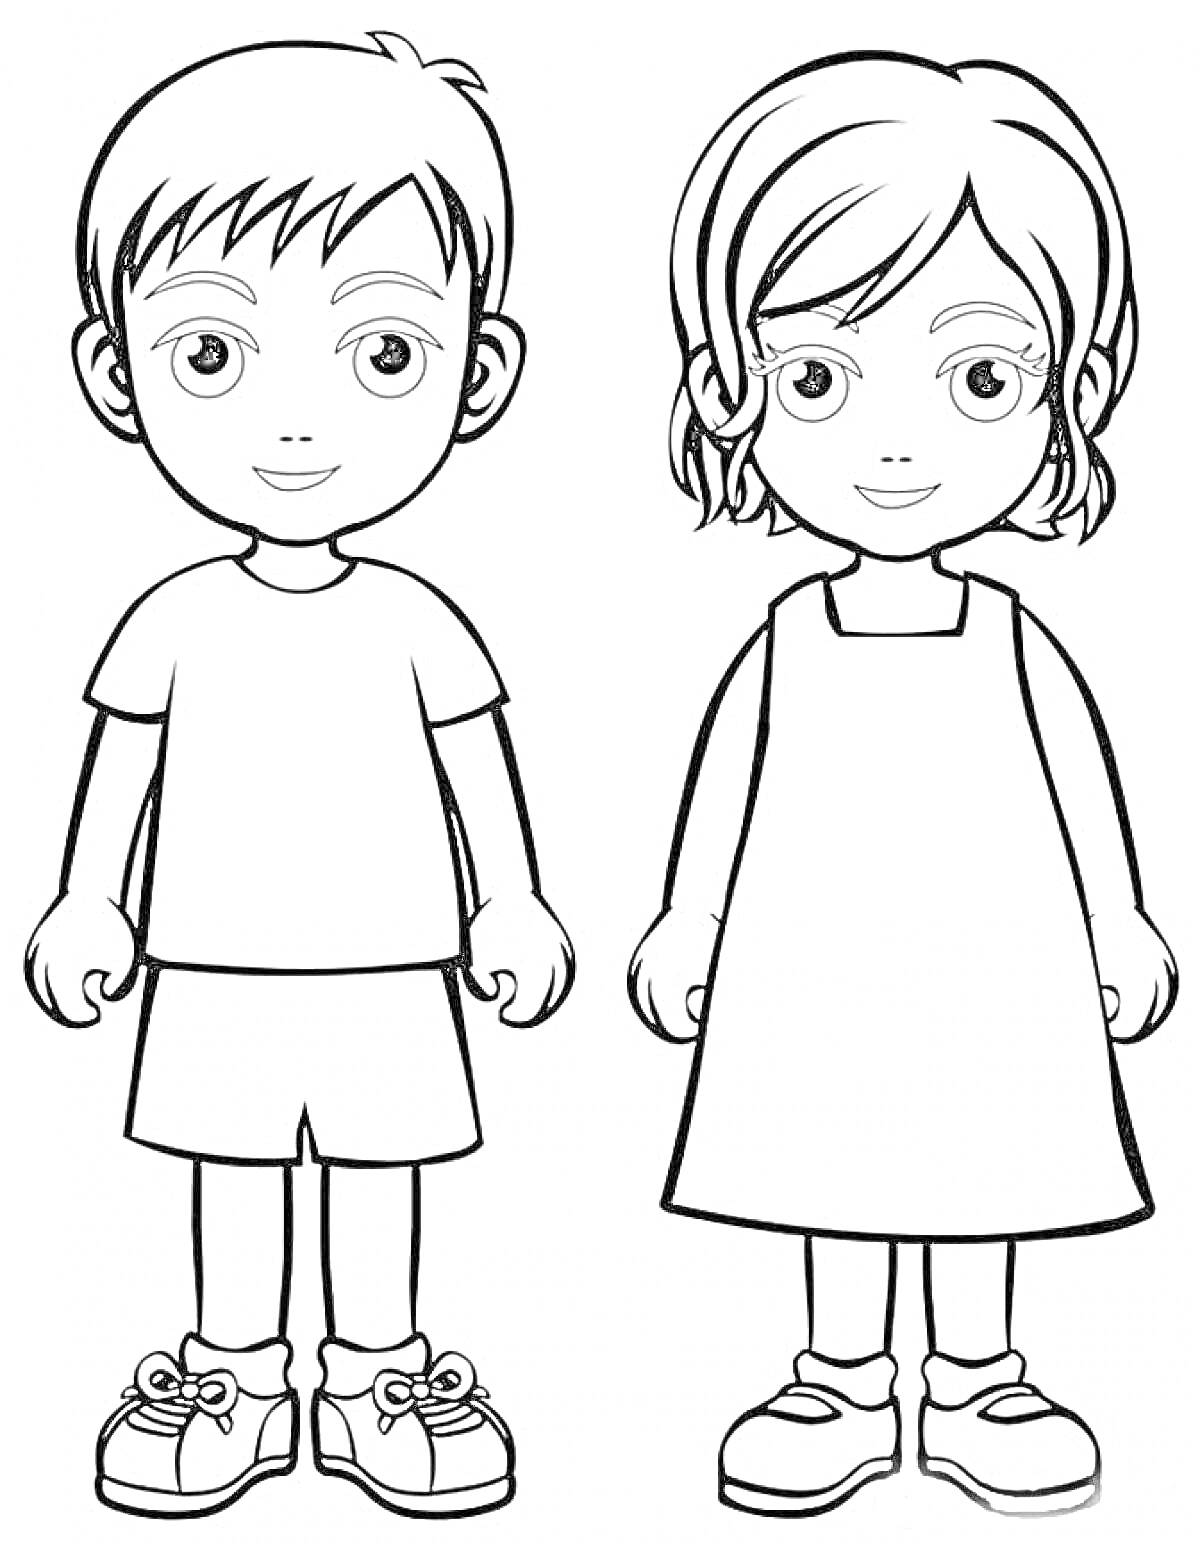 Дети в летних нарядах (мальчик и девочка, стоящие рядом, в летних одеждах)